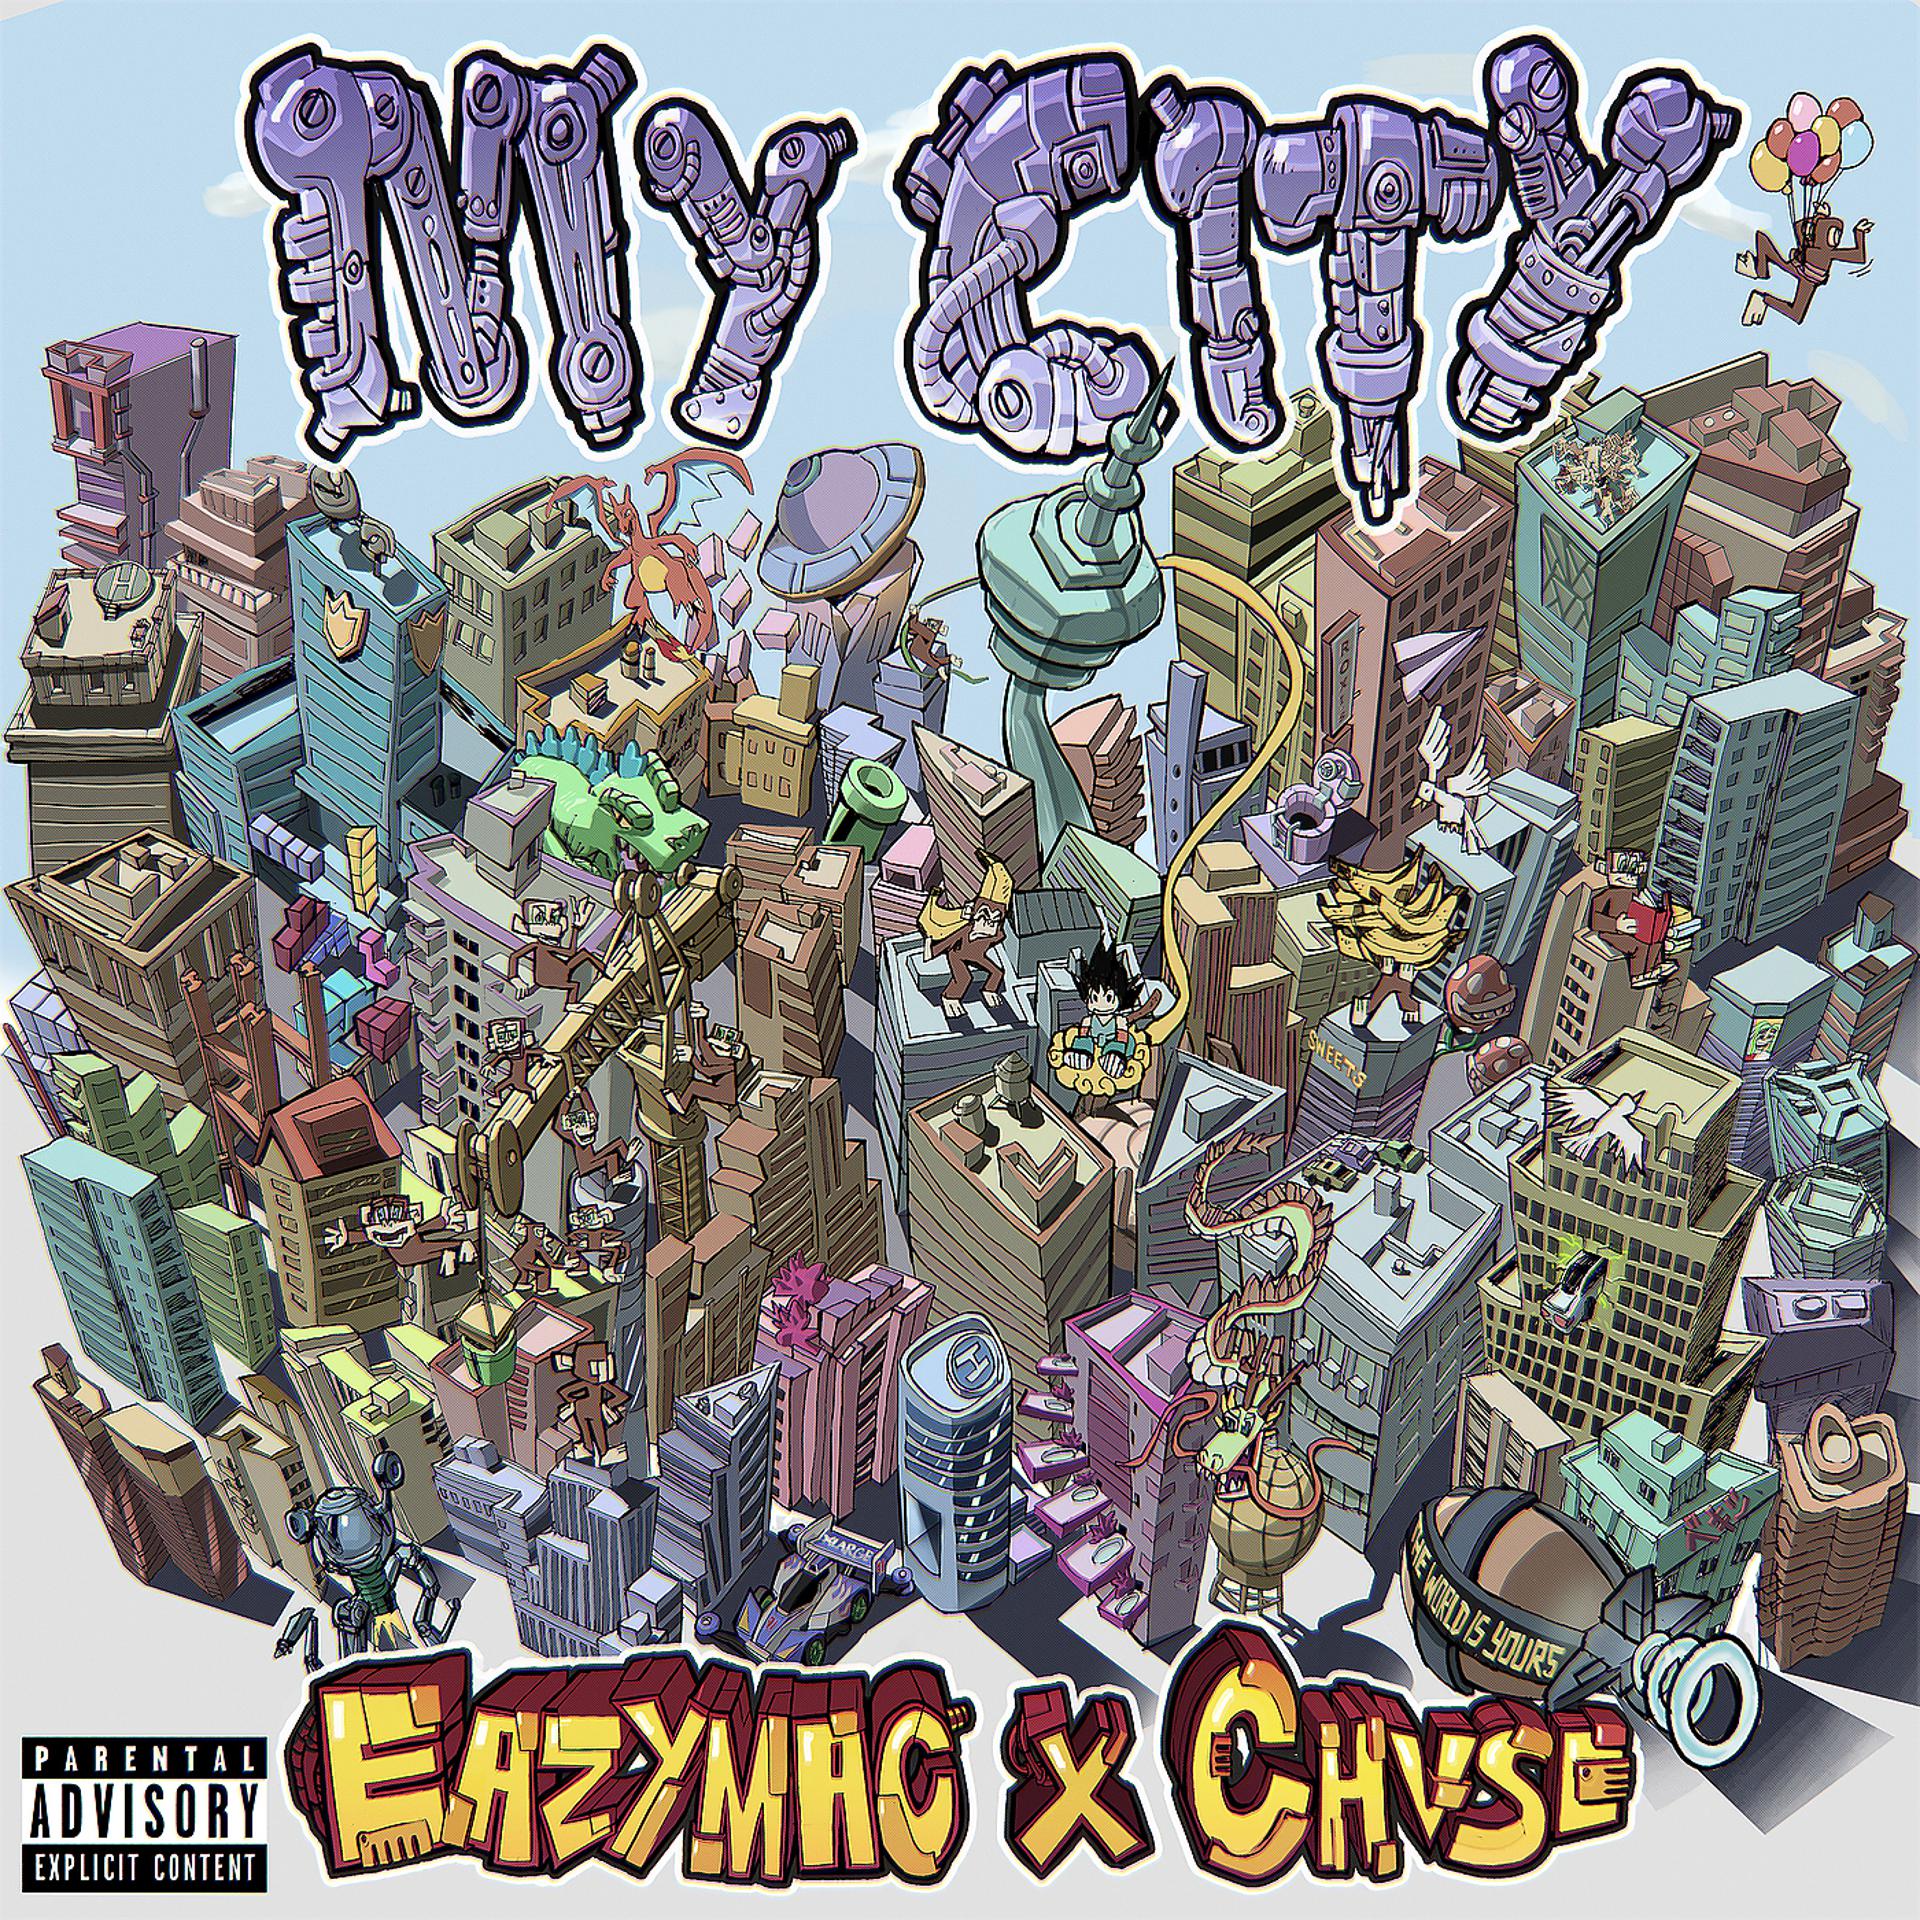 Постер альбома My City